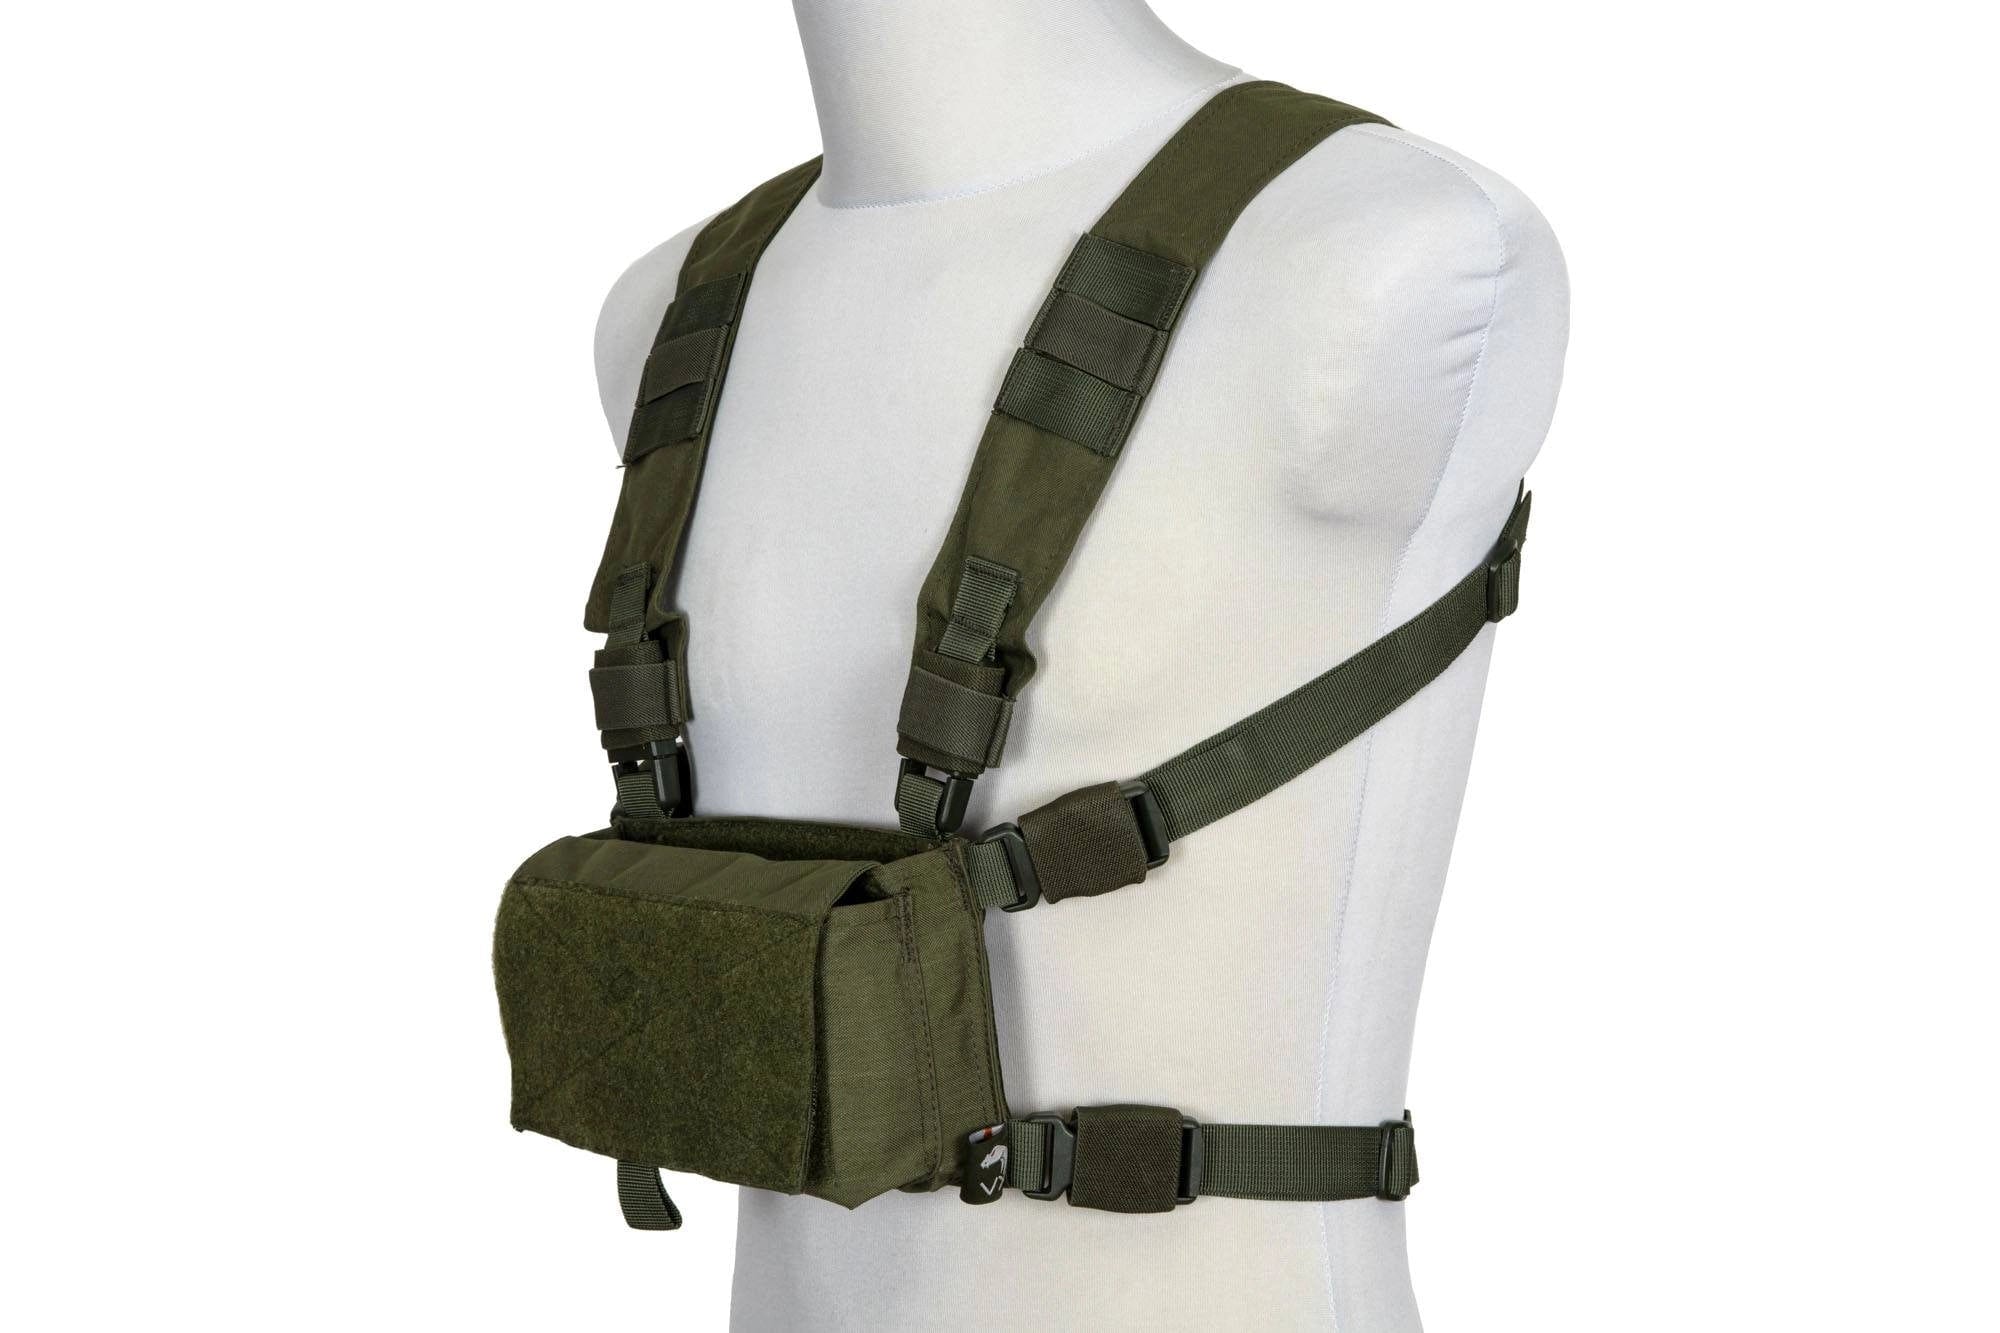 VX Buckle Up Utility Rig Tactical Vest - Olive Drab